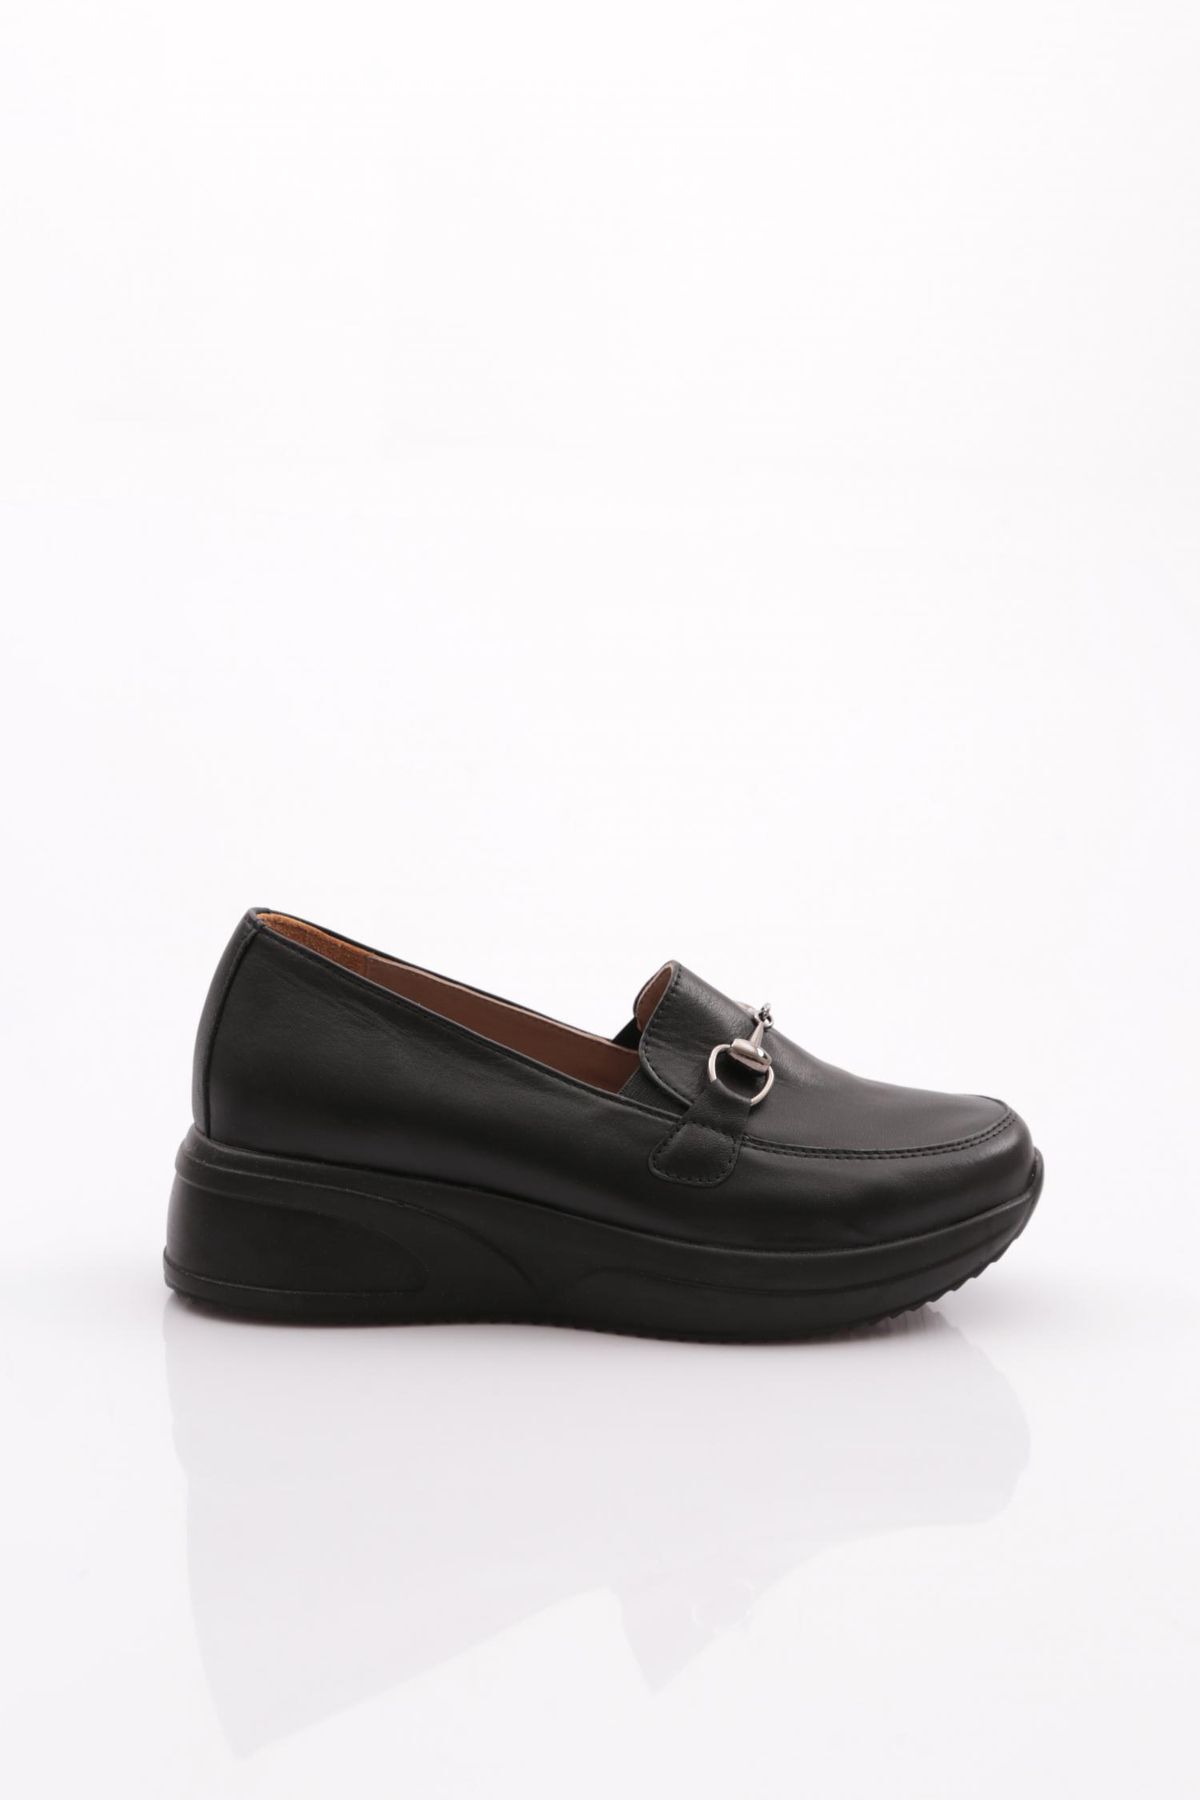 Dgn 2237 Kadın Kalın Taban Comfort Ayakkabı Hakiki Deri Siyah